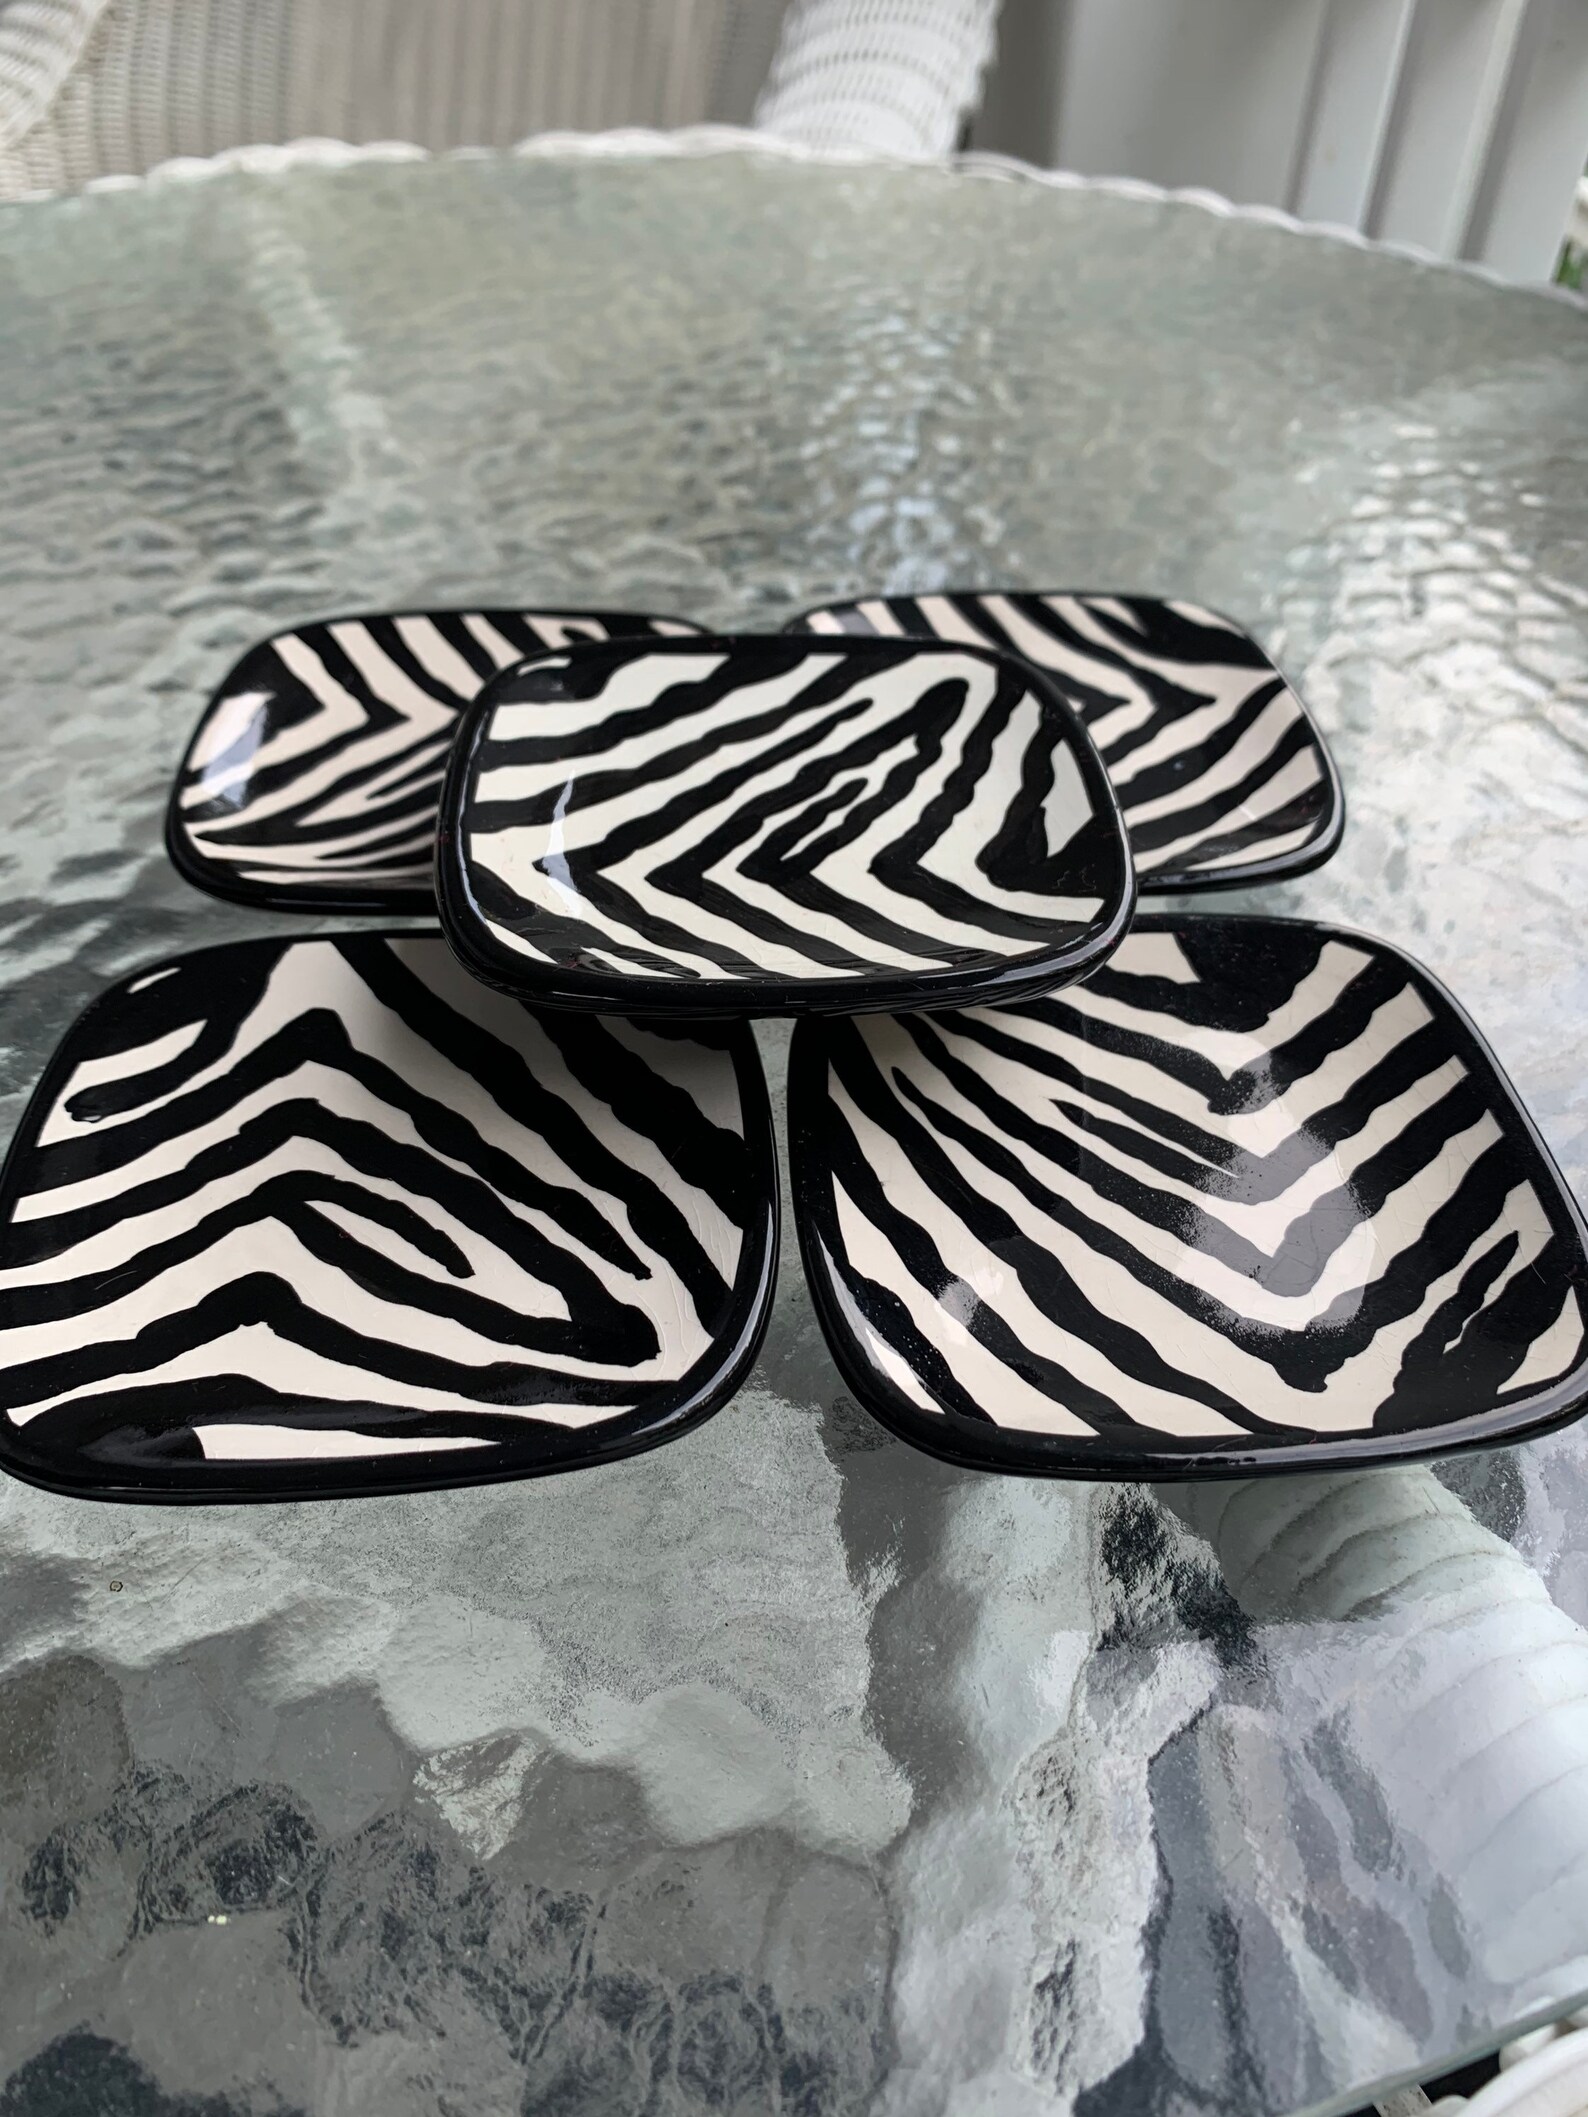 Vintage Black and White Zebra Pattern Sushi Plates | Etsy